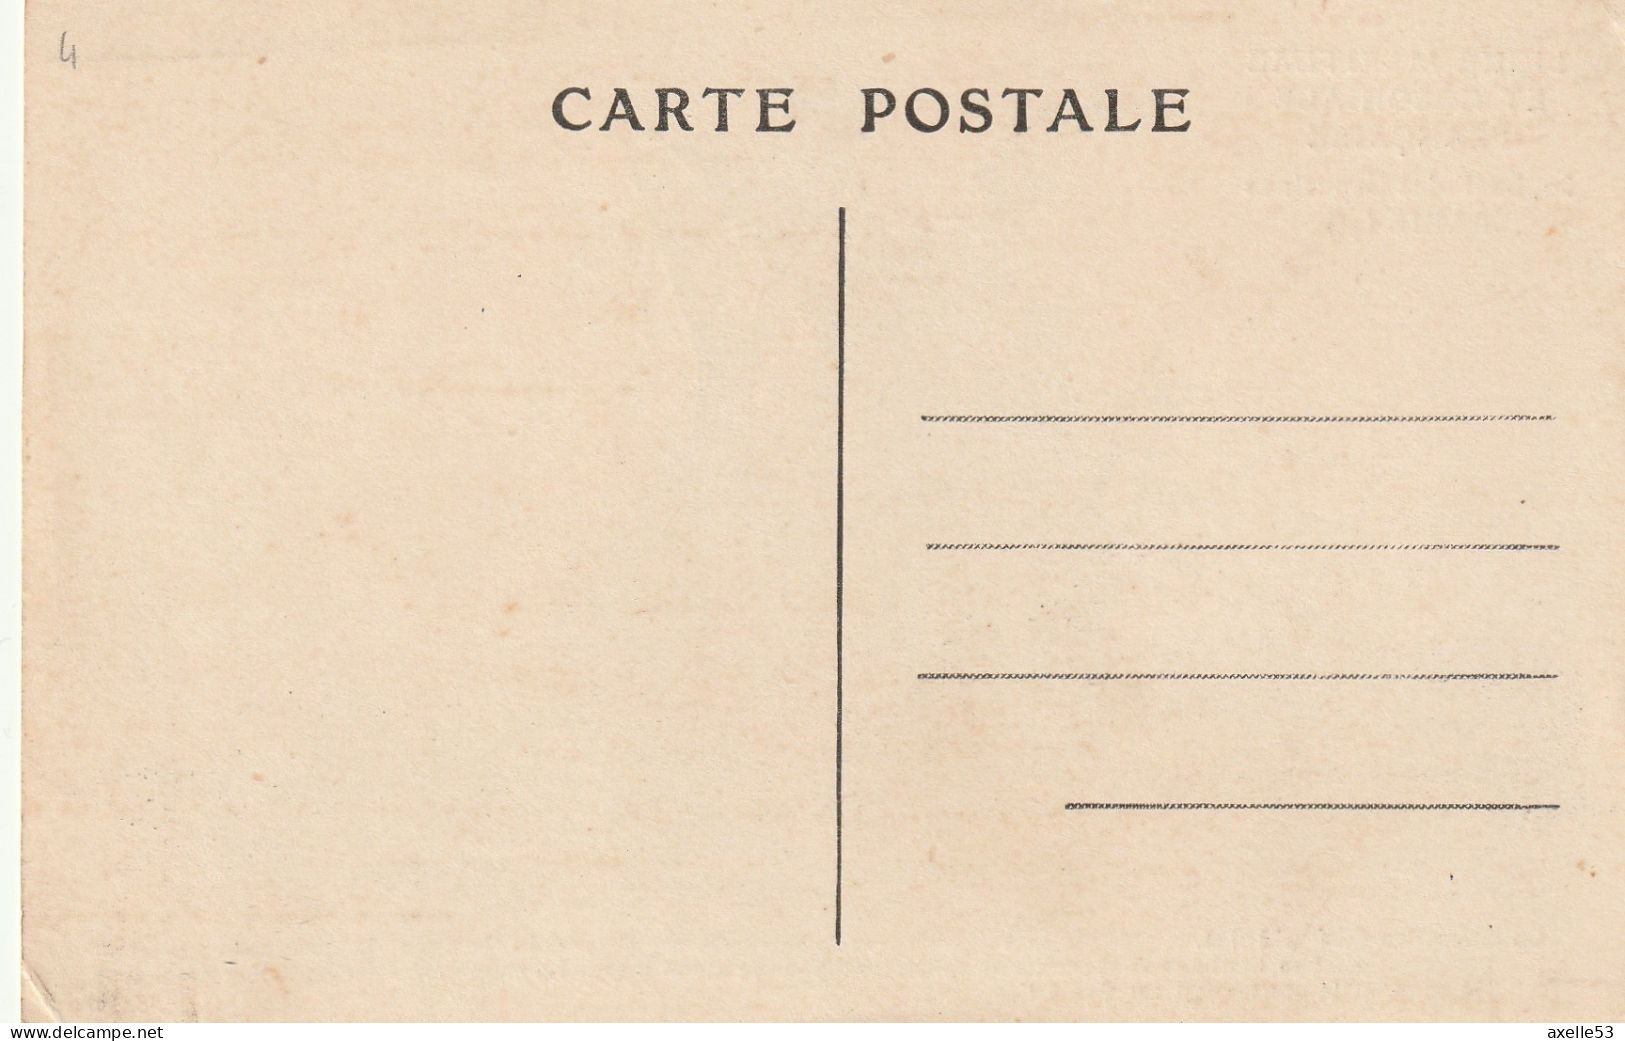 Ligue Maritime Et Coloniale Française 08 (10156) La Caraque (XIVe Siècle) - Collections & Lots